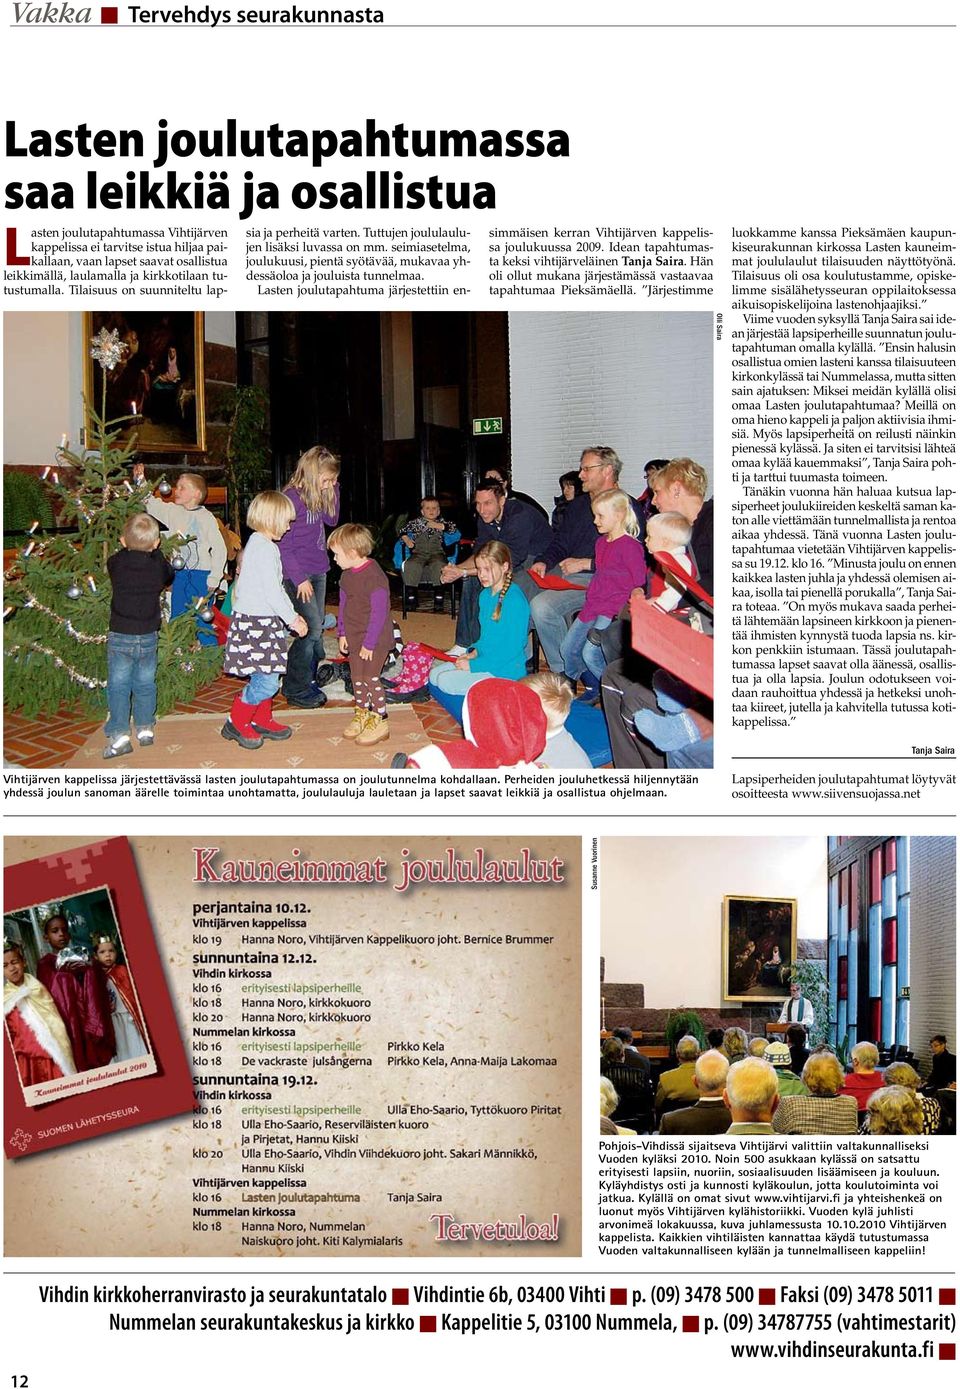 seimiasetelma, joulukuusi, pientä syötävää, mukavaa yhdessäoloa ja jouluista tunnelmaa. Lasten joulutapahtuma järjestettiin ensimmäisen kerran Vihtijärven kappelissa joulukuussa 2009.